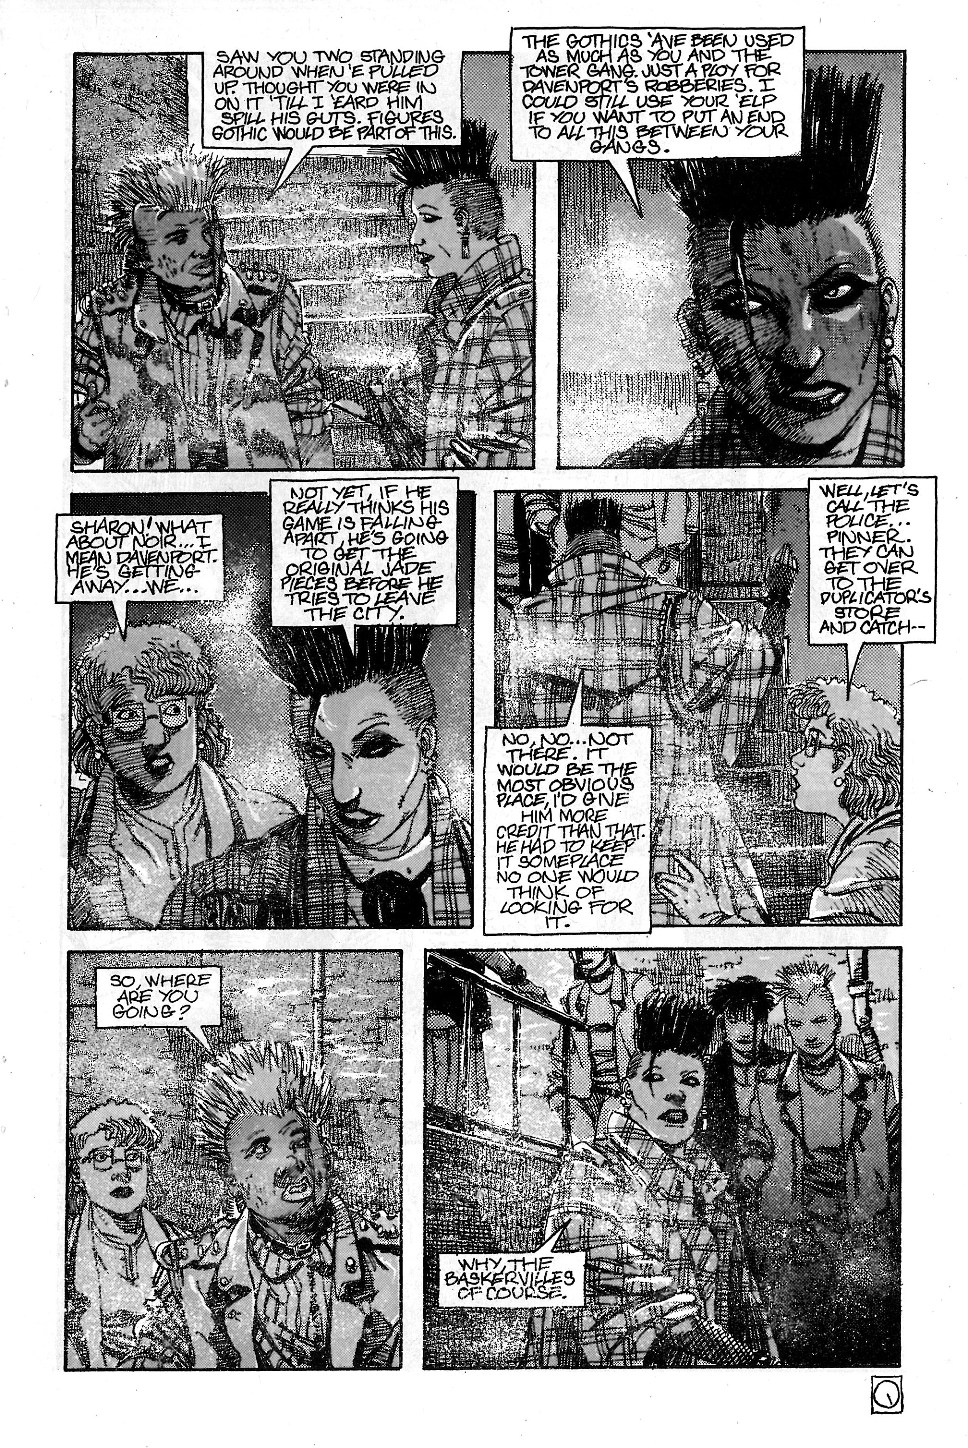 Read online Baker Street comic -  Issue #5 - 7